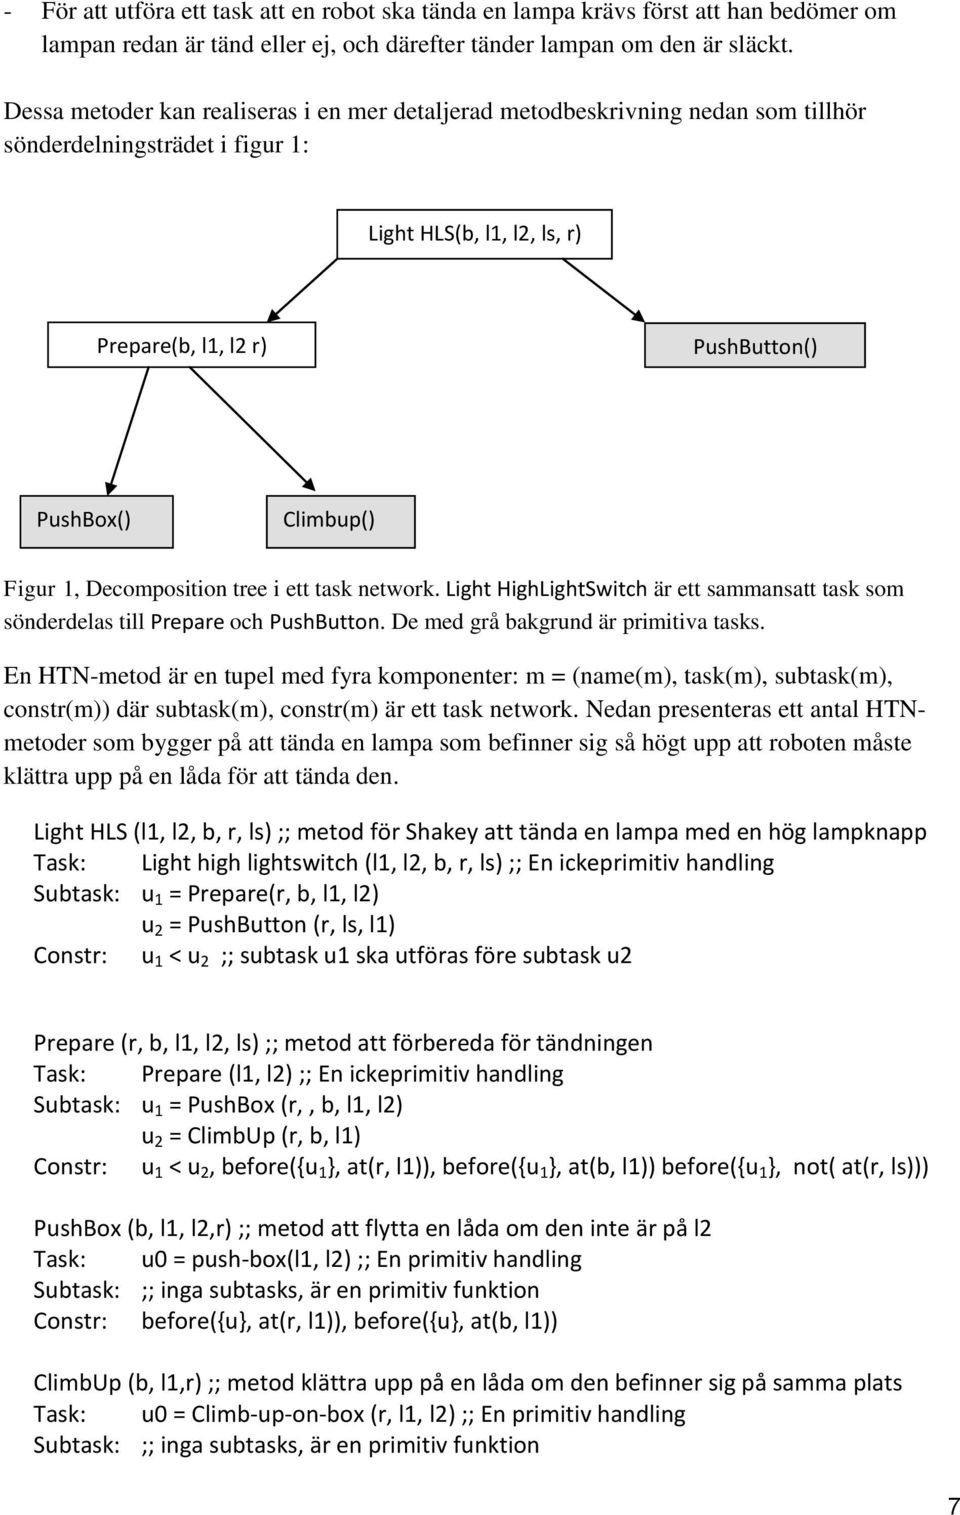 Figur 1, Decomposition tree i ett task network. Light HighLightSwitch är ett sammansatt task som sönderdelas till Prepare och PushButton. De med grå bakgrund är primitiva tasks.